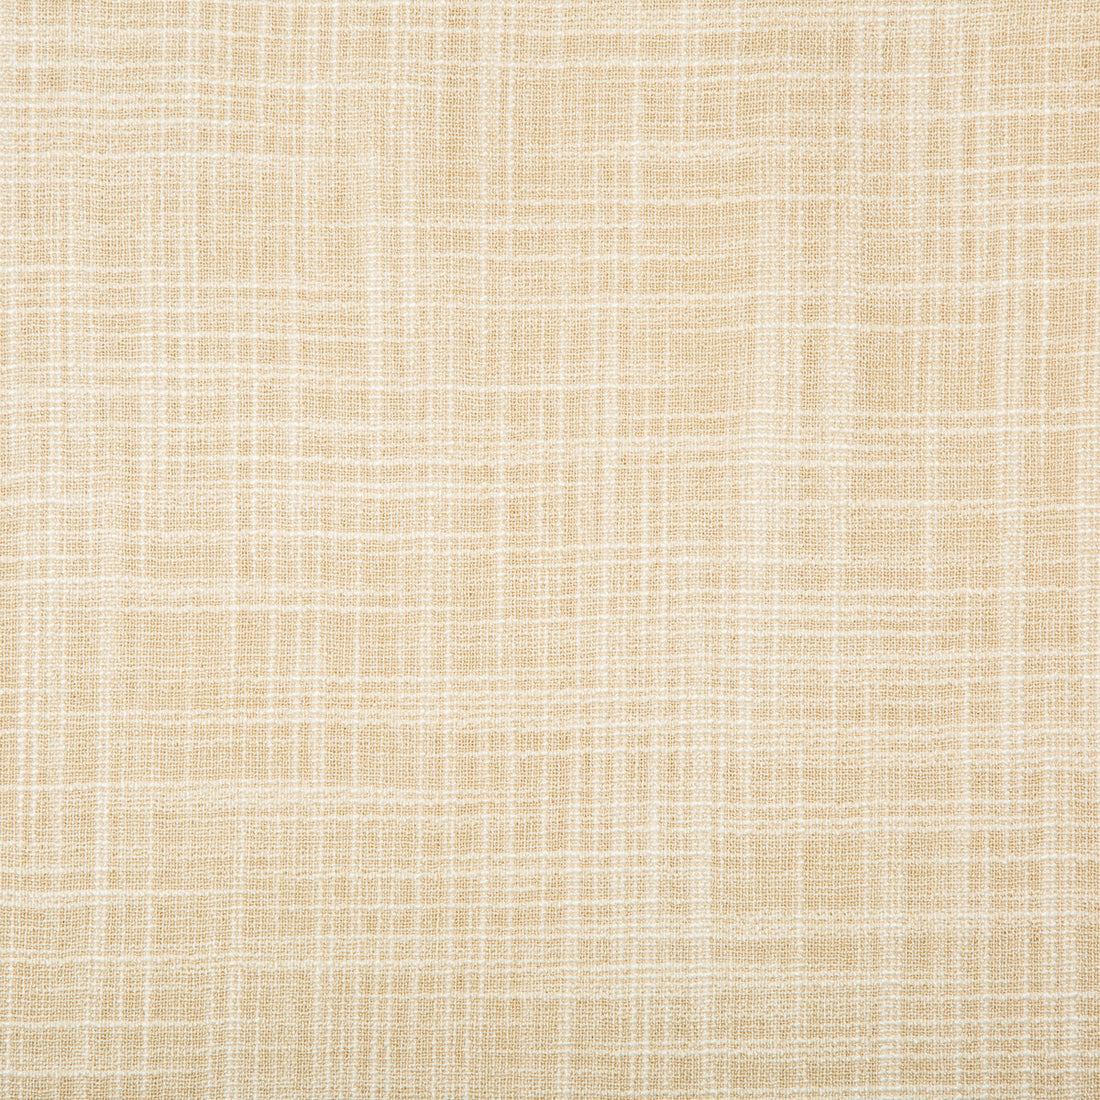 Kravet Basics fabric in 4674-16 color - pattern 4674.16.0 - by Kravet Basics